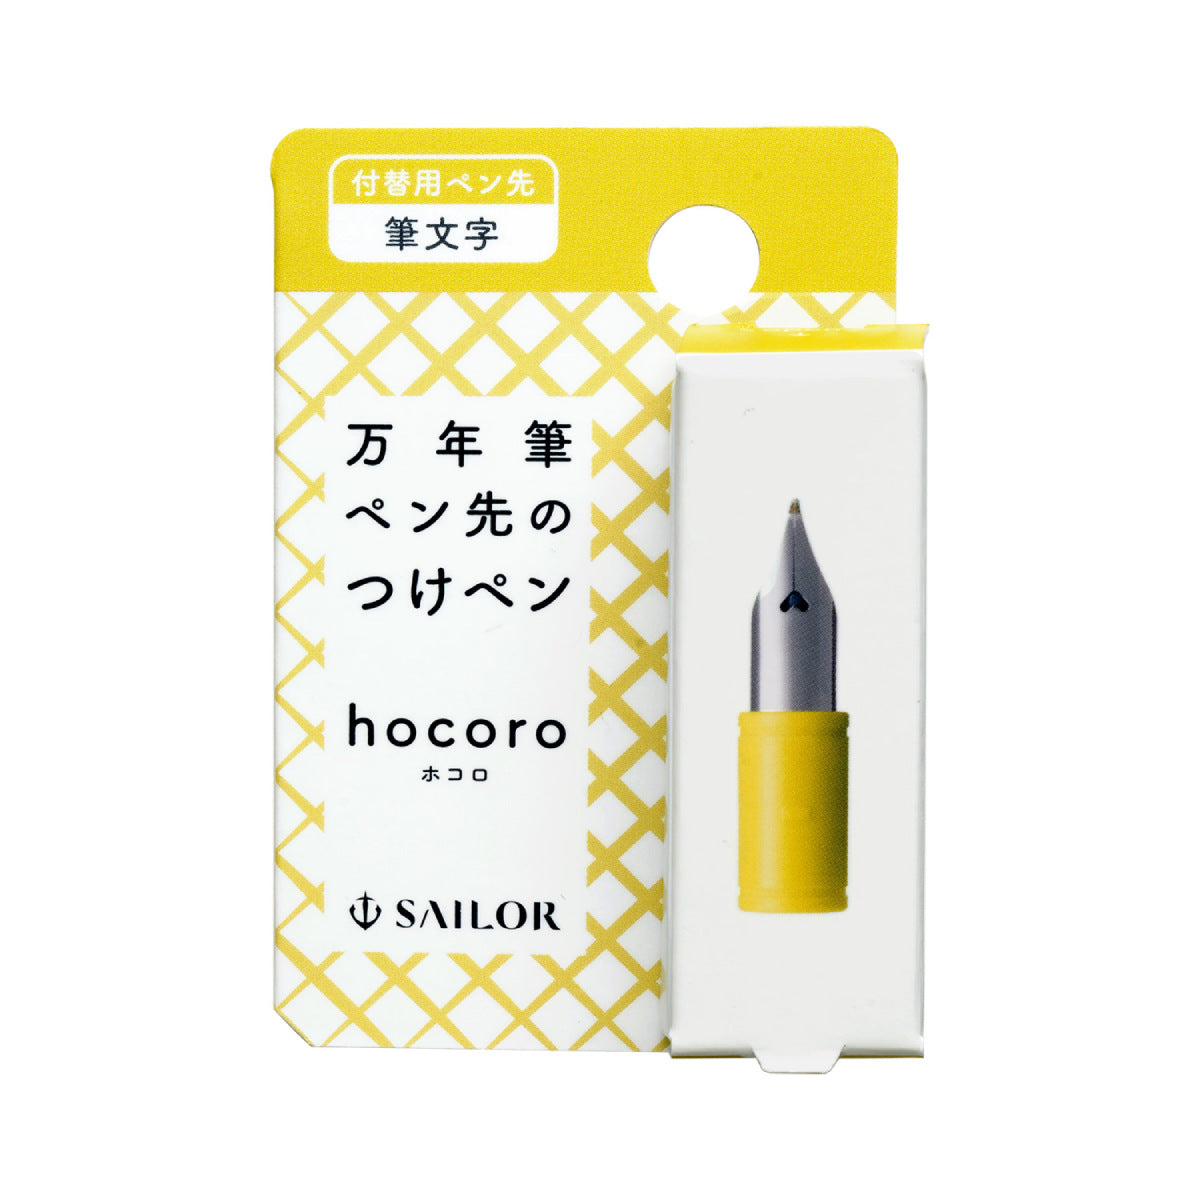 Sailor Hocoro - replacement spring Fude